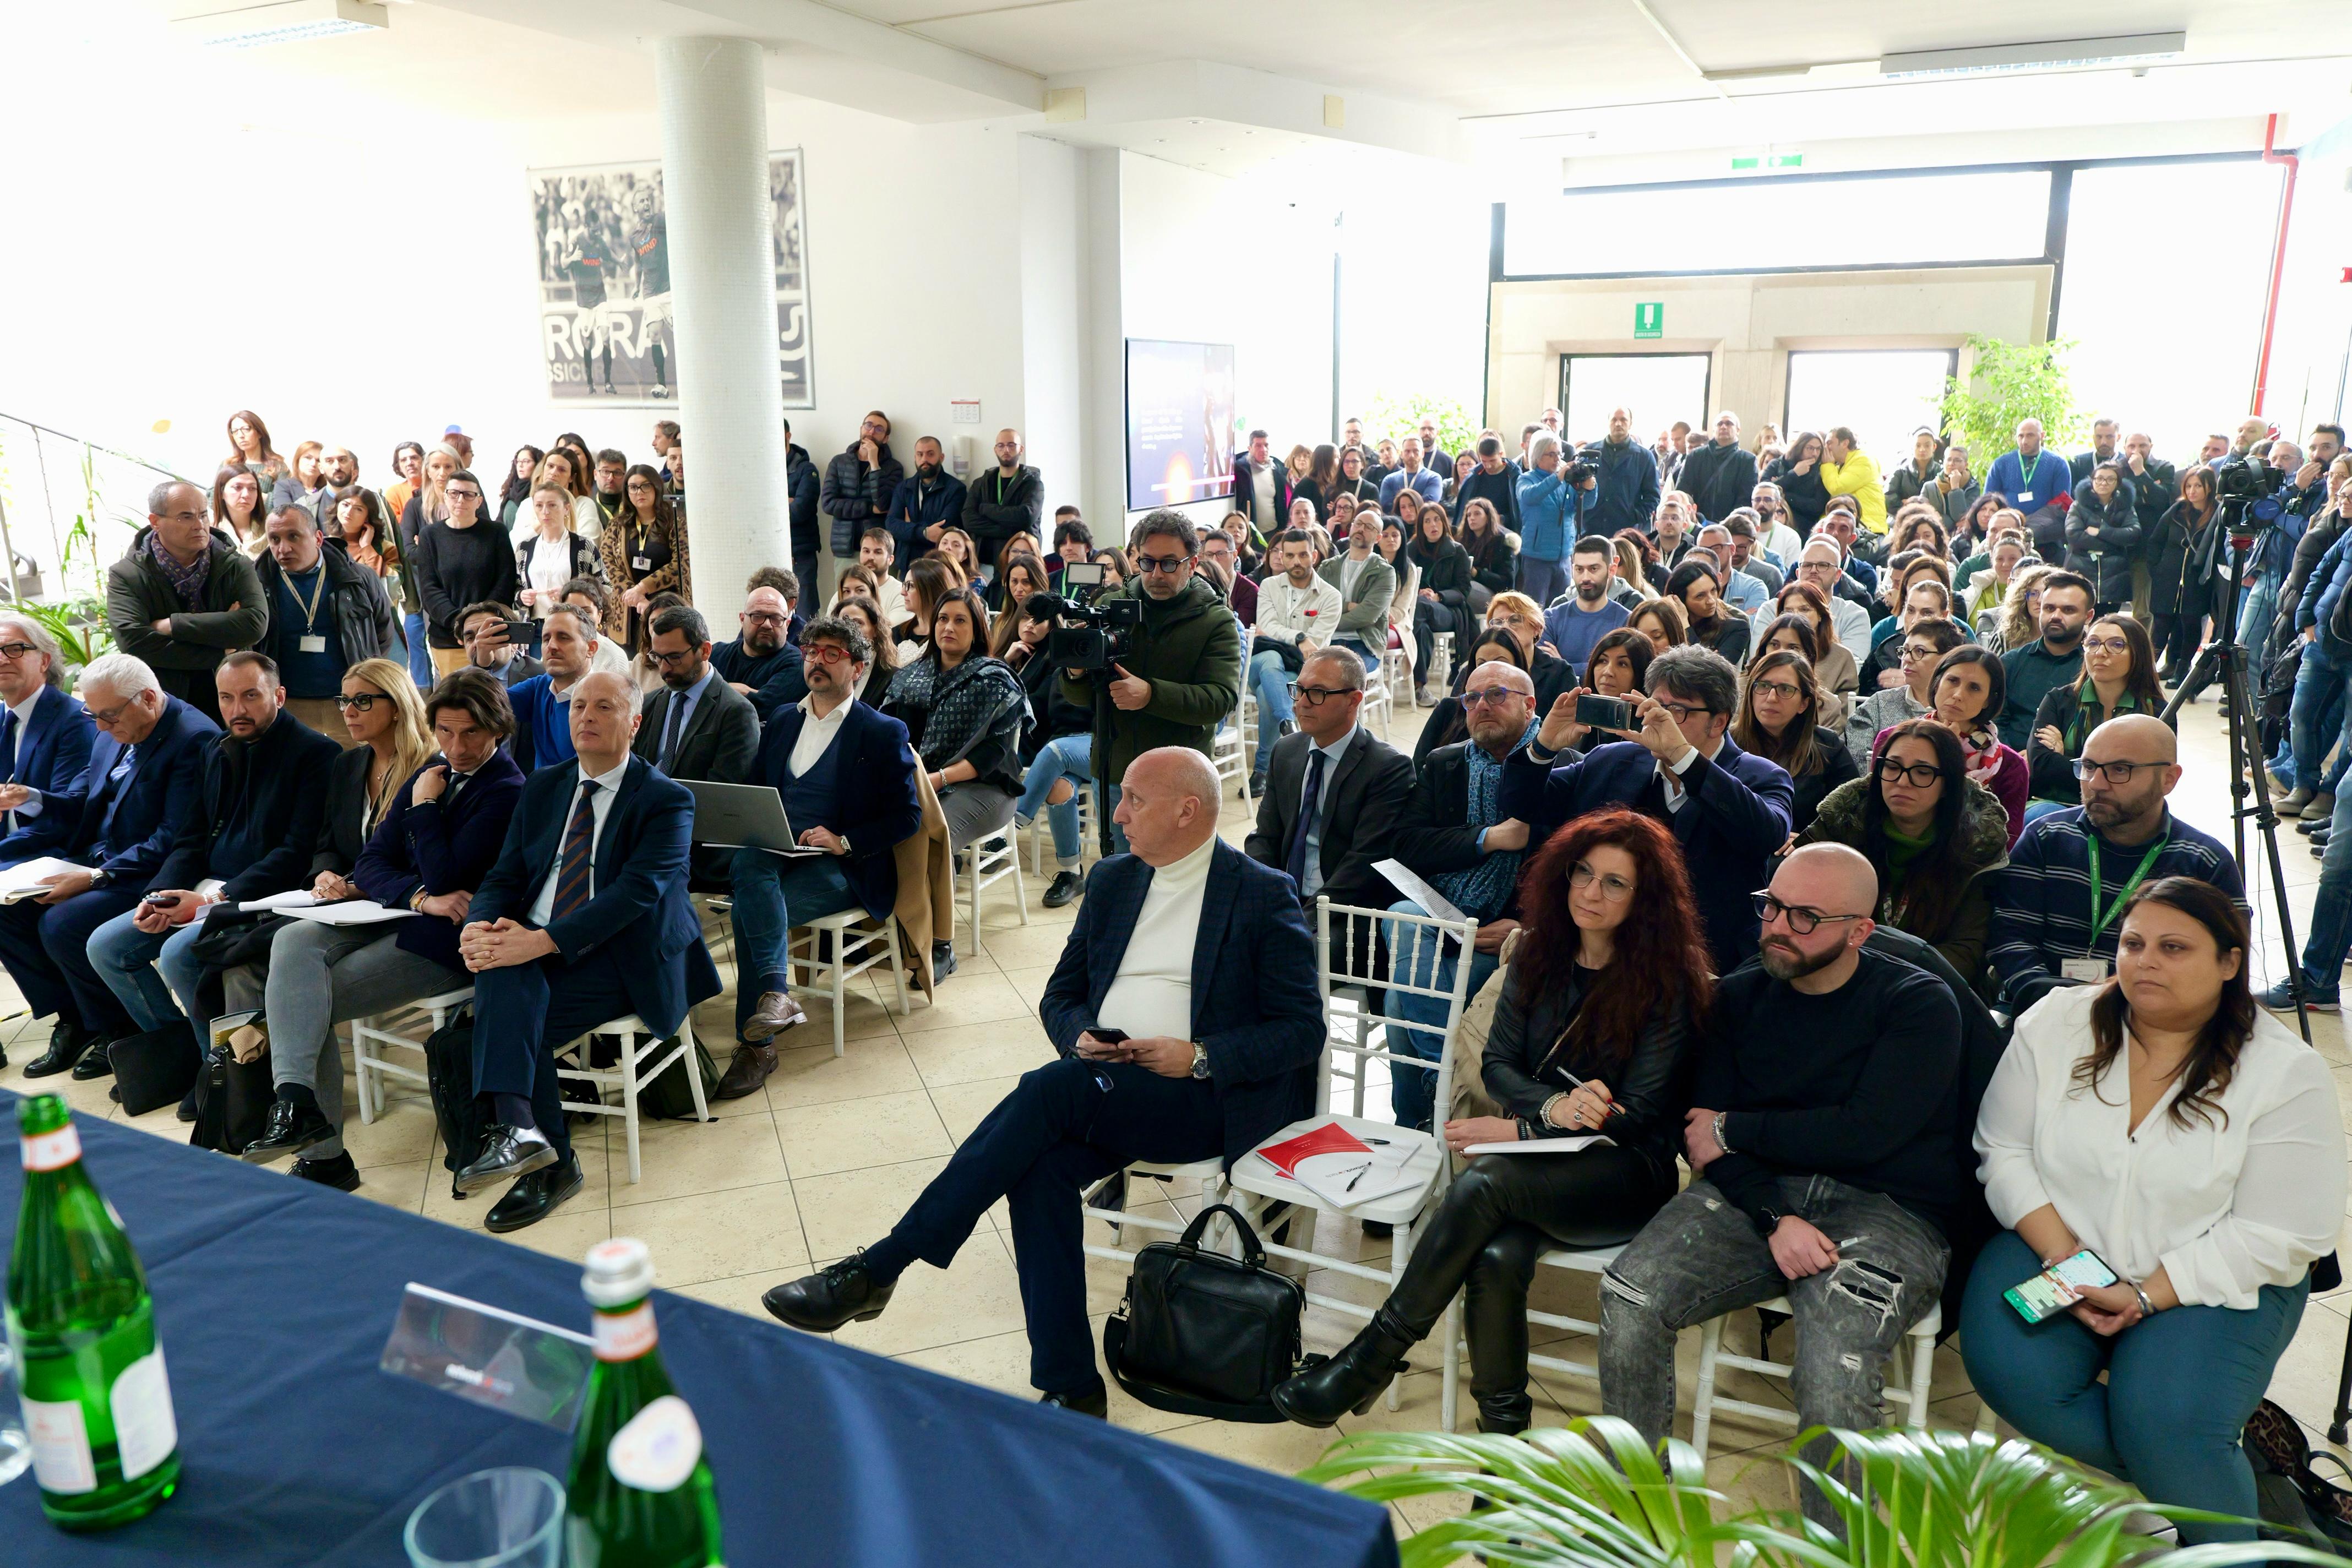 Galleria La tecnologia salva i posti di lavoro: Network Contacts e Regione Puglia evitano i 280 licenziamenti - Diapositiva 8 di 18